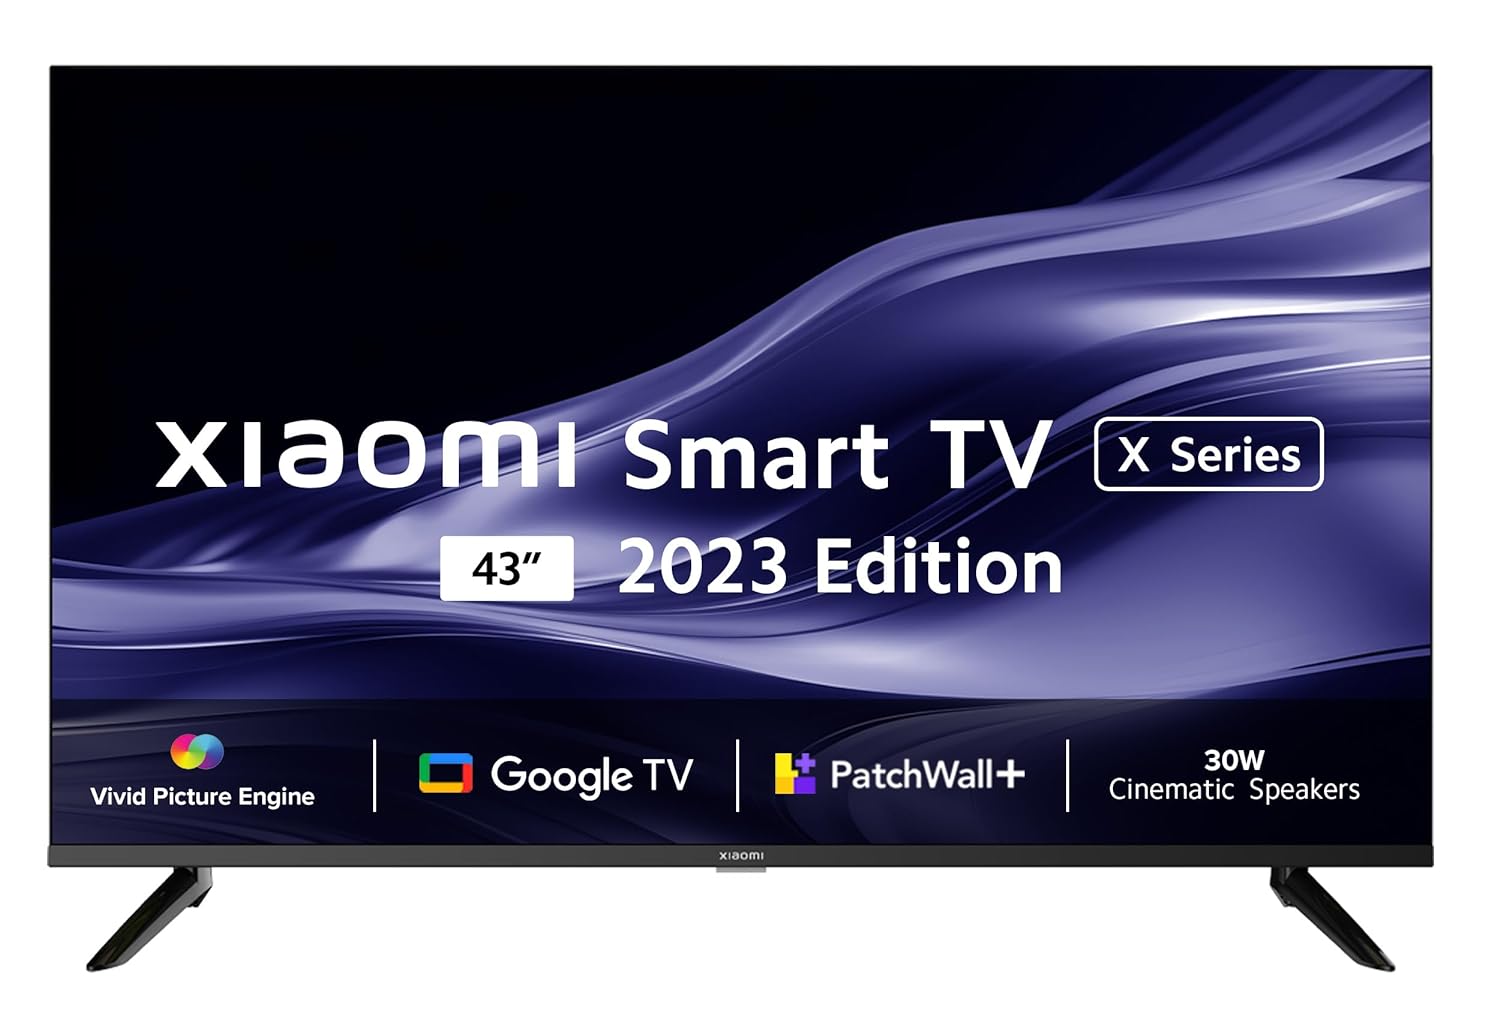 Xiaomi 108 cm (43 inches) X Series 4K Ultra HD Smart Google TV L43M8-A2IN (Black)